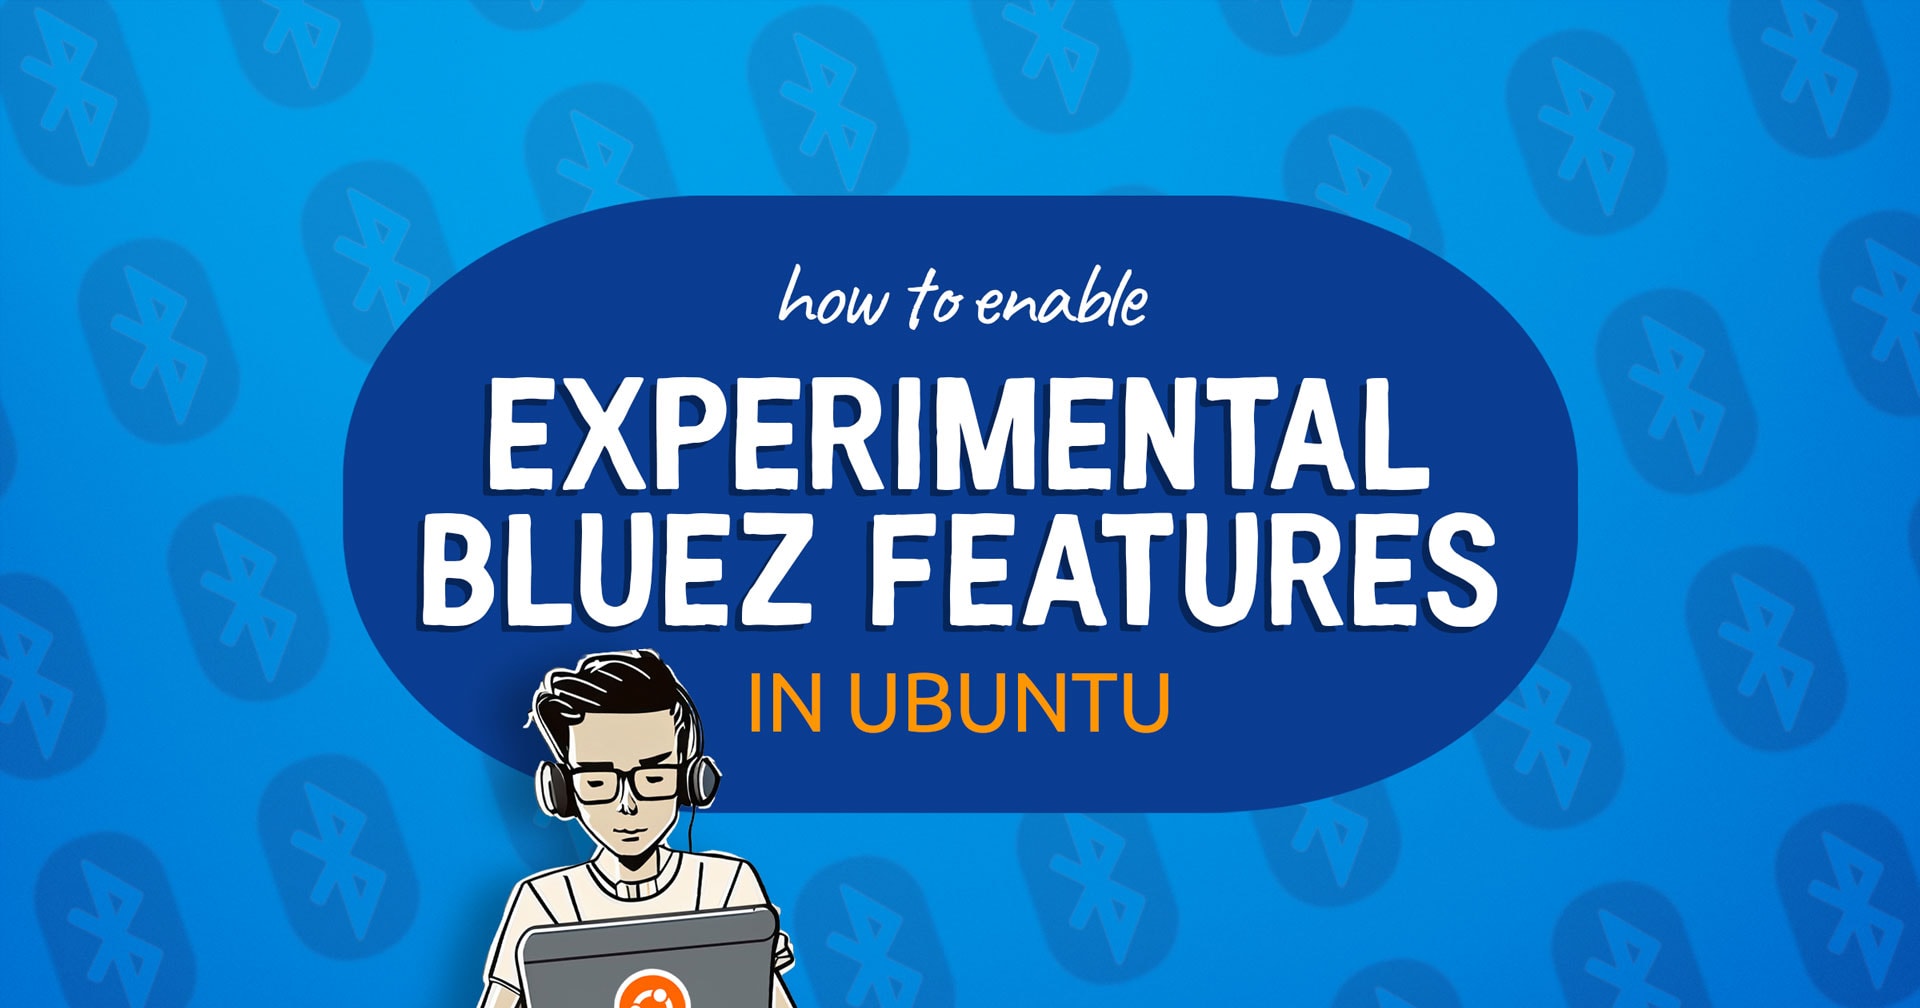 Breaking News: Enabling Bluez Experimental Features in Ubuntu Simplified